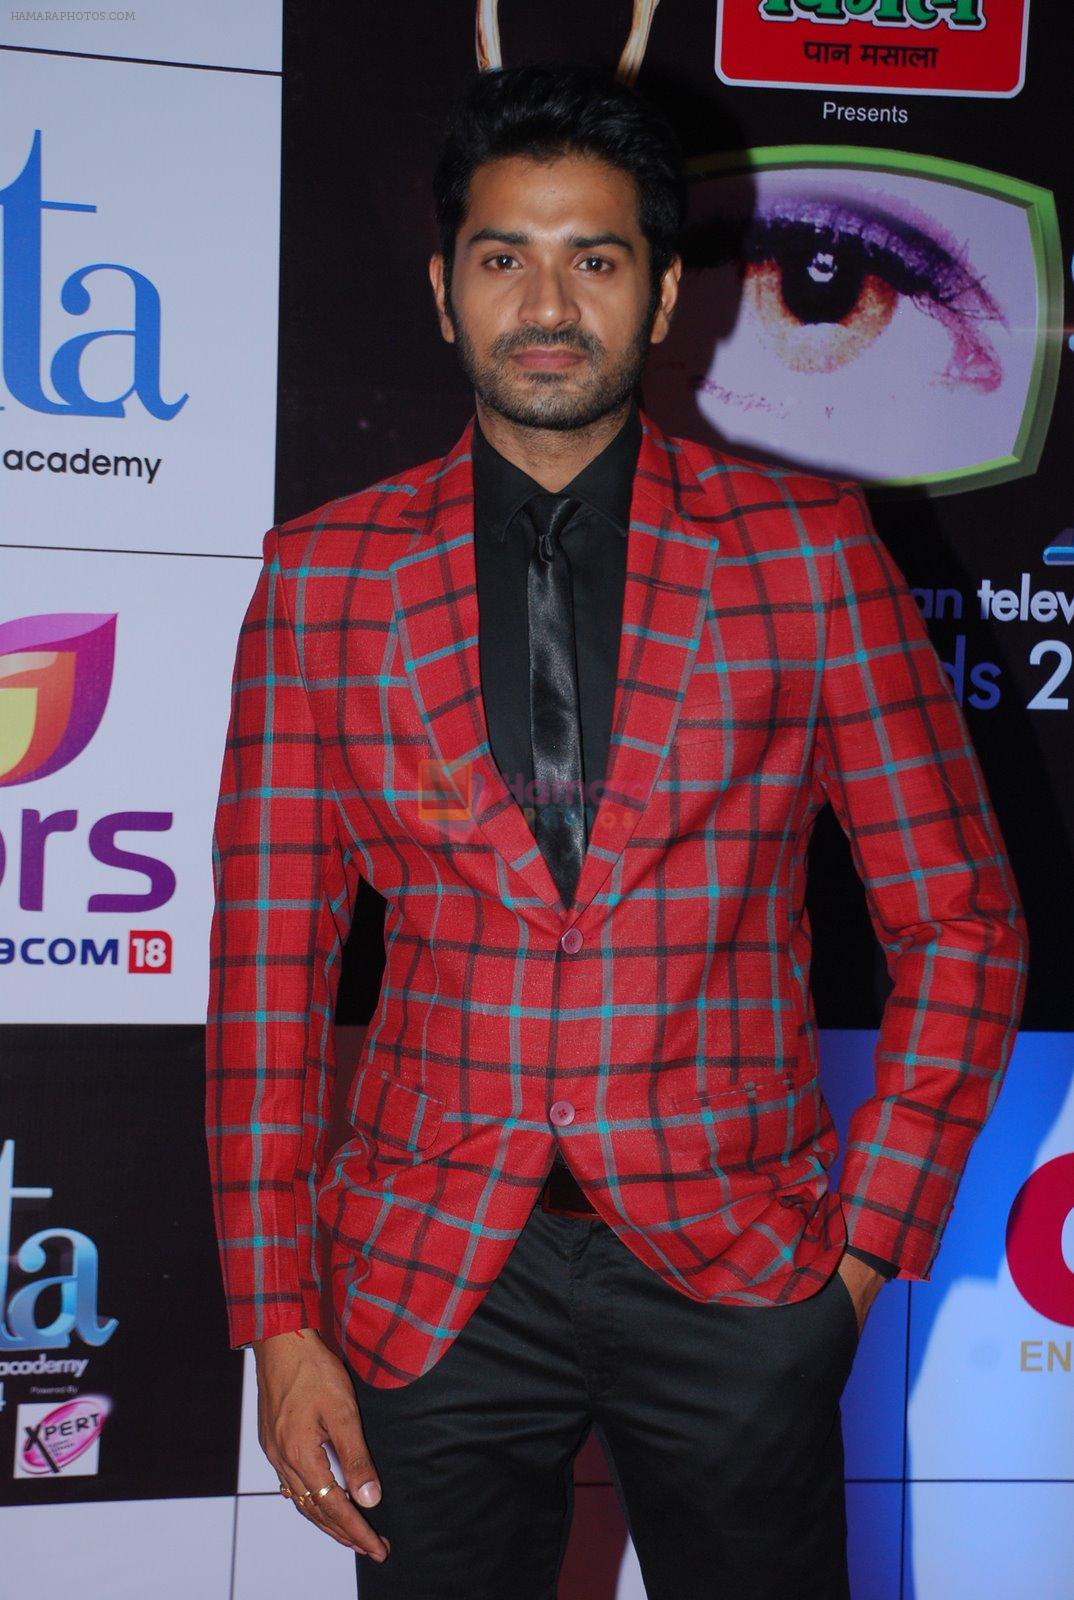 Mrunal Jain at ITA Awards red carpet in Mumbai on 1st Nov 2014